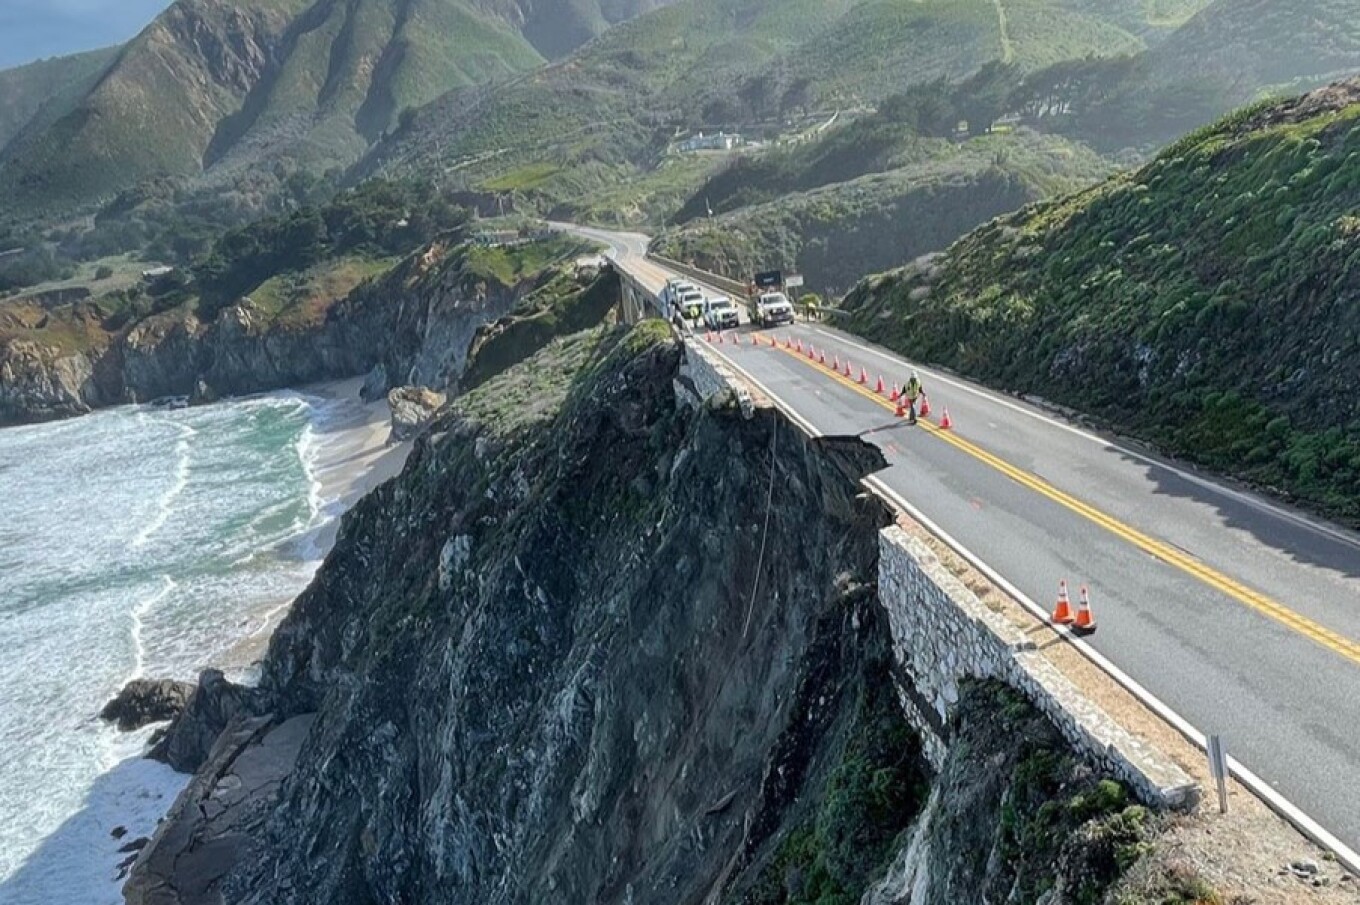 autostrada 1 ikone e kalifornise mbyllet per shkak te rreshqitjeve te dheut